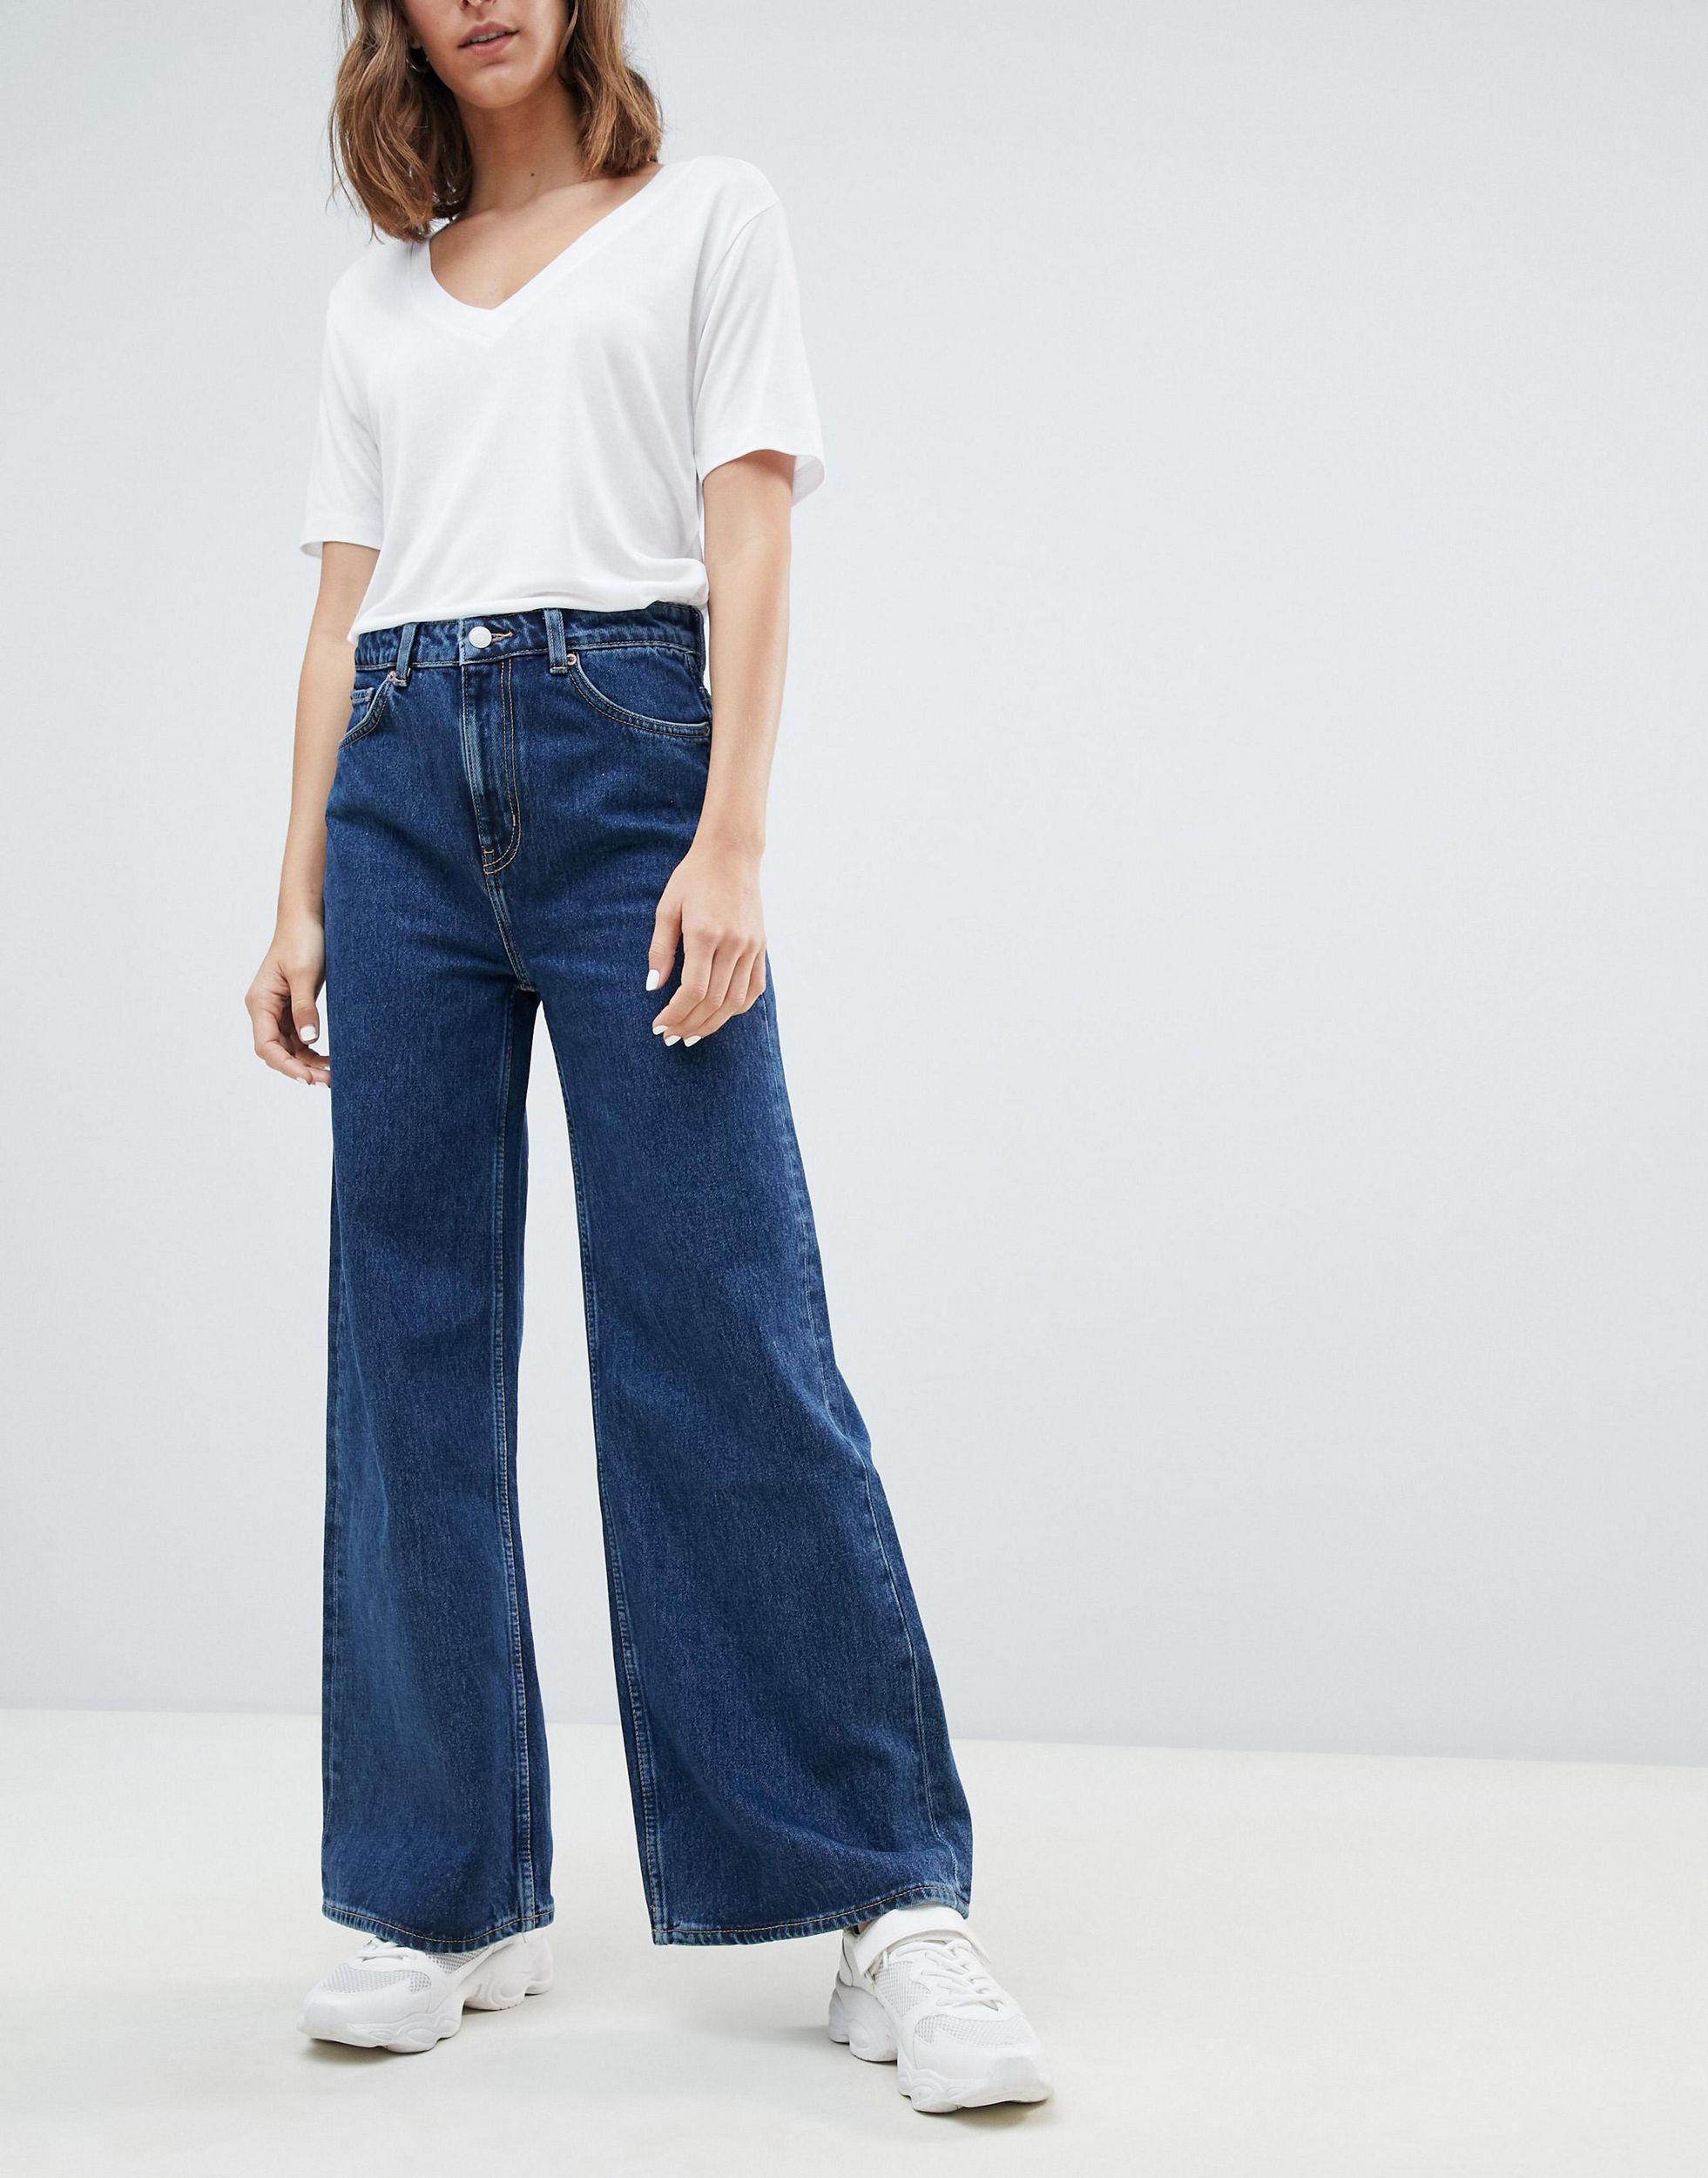 Джинсы прямые большие размеры. Джинсы Weekday Ace. Широкие джинсы. Прямые широкие джинсы женские. Синие джинсы женские широкие.